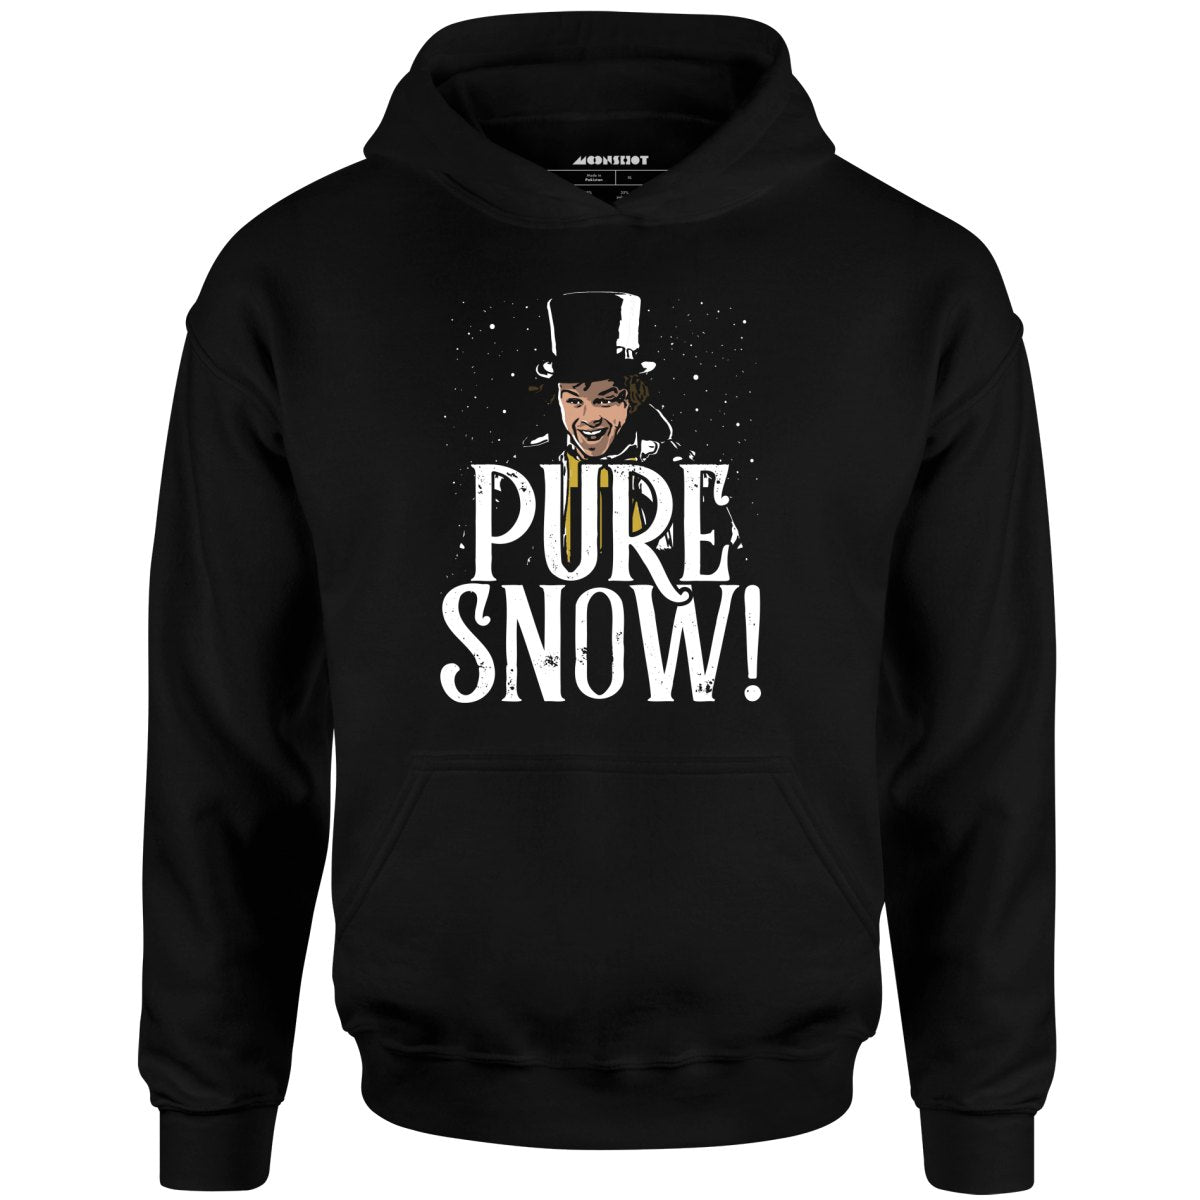 Charles DeMar - Pure Snow! - Unisex Hoodie